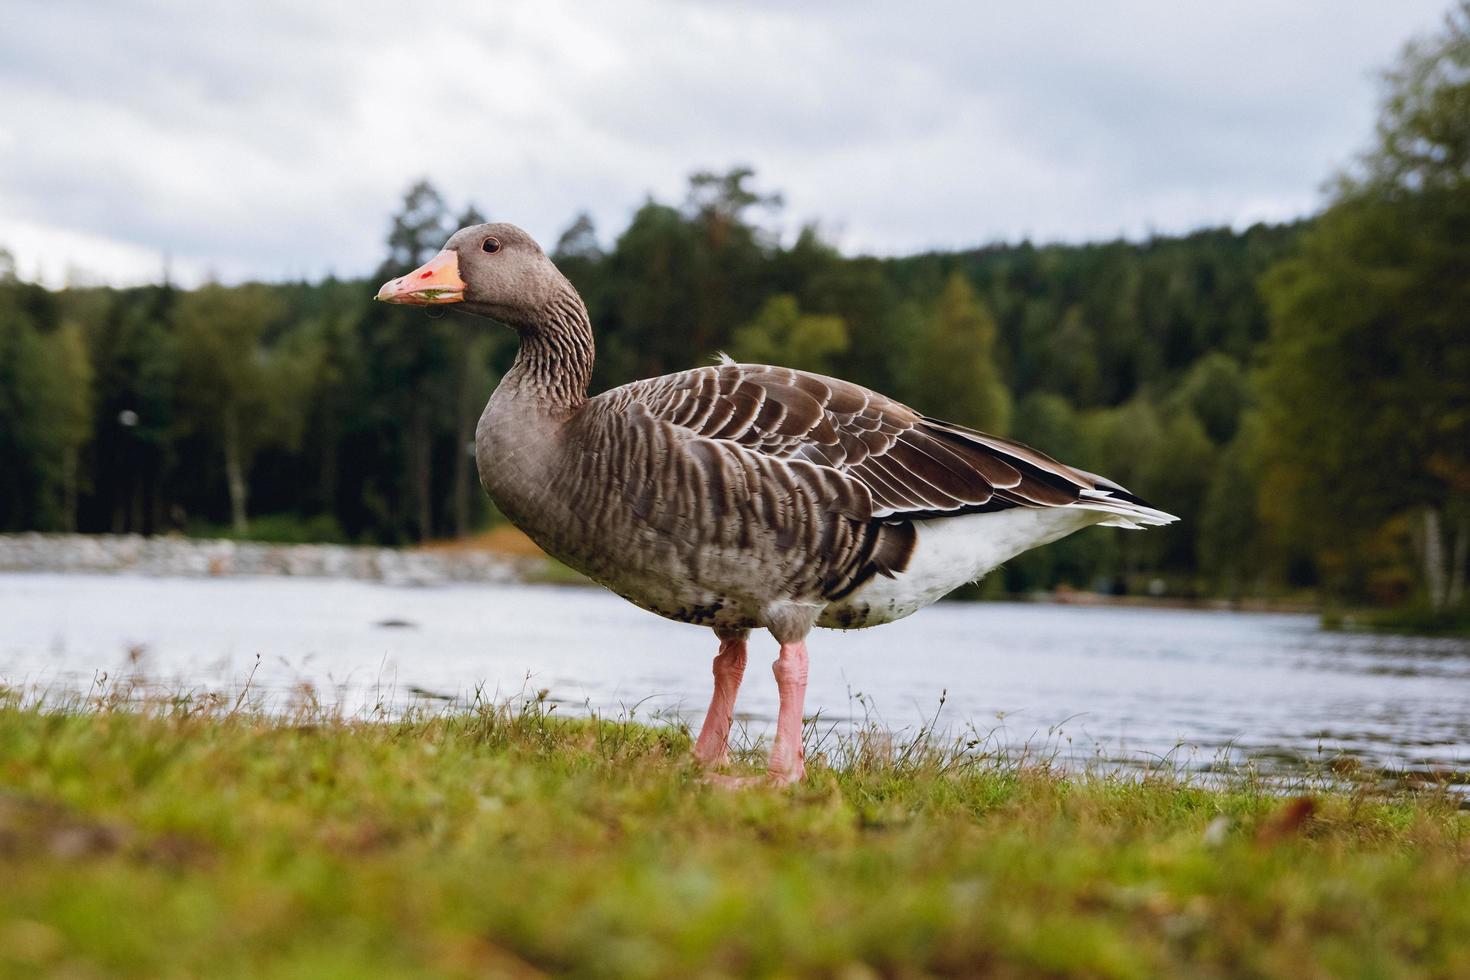 Greylag goose with orange beak in parkand lake background photo